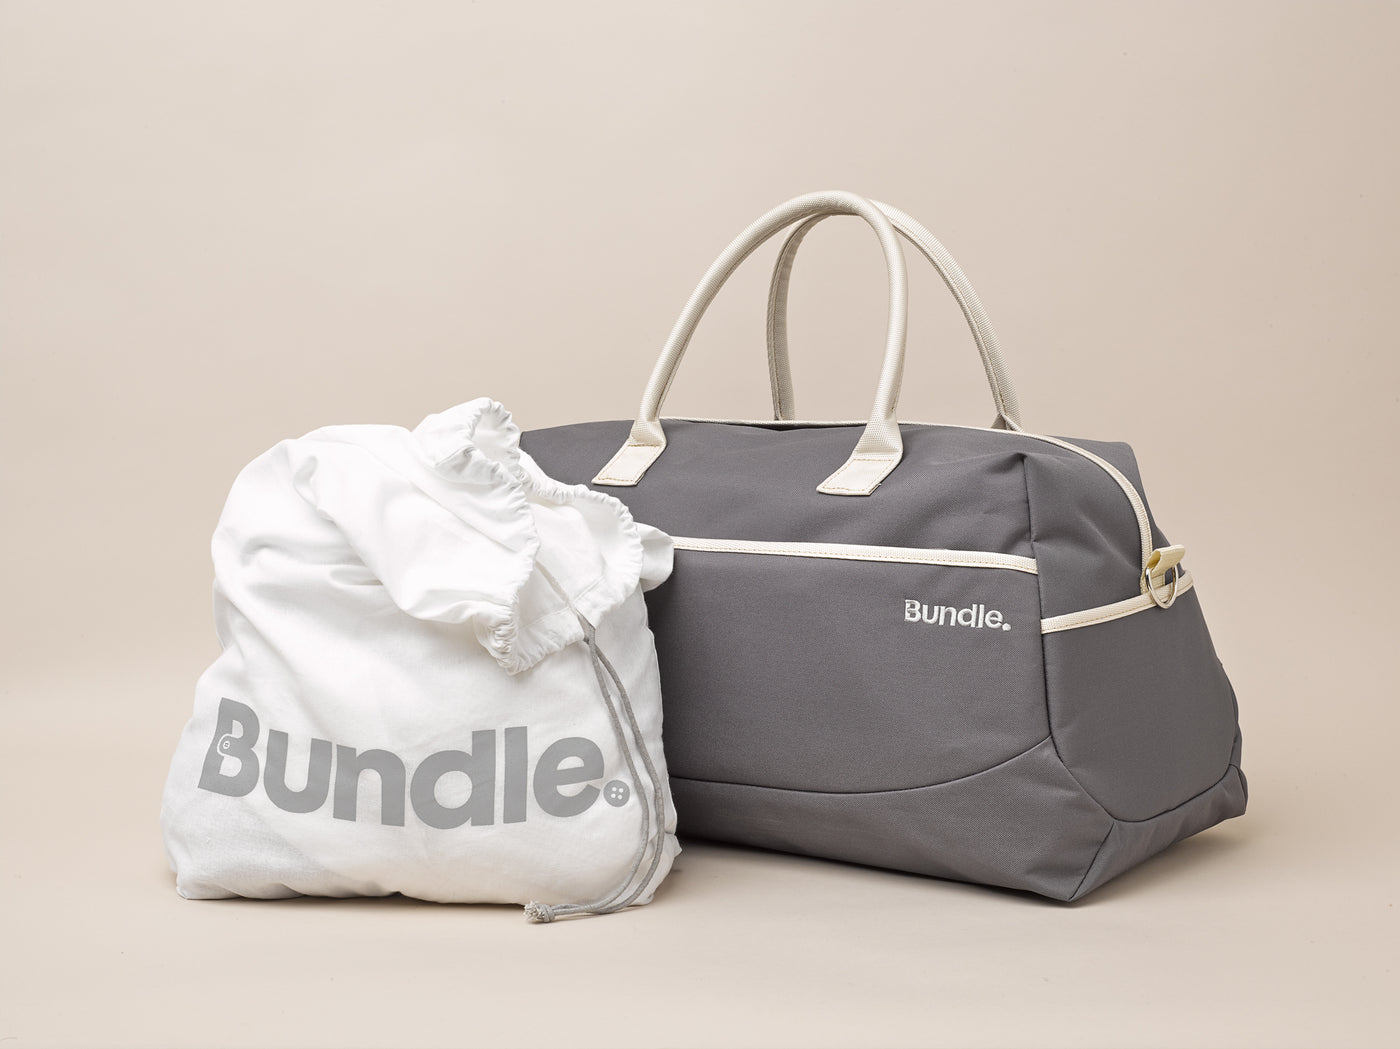 Pre-Packed Bundle Bags